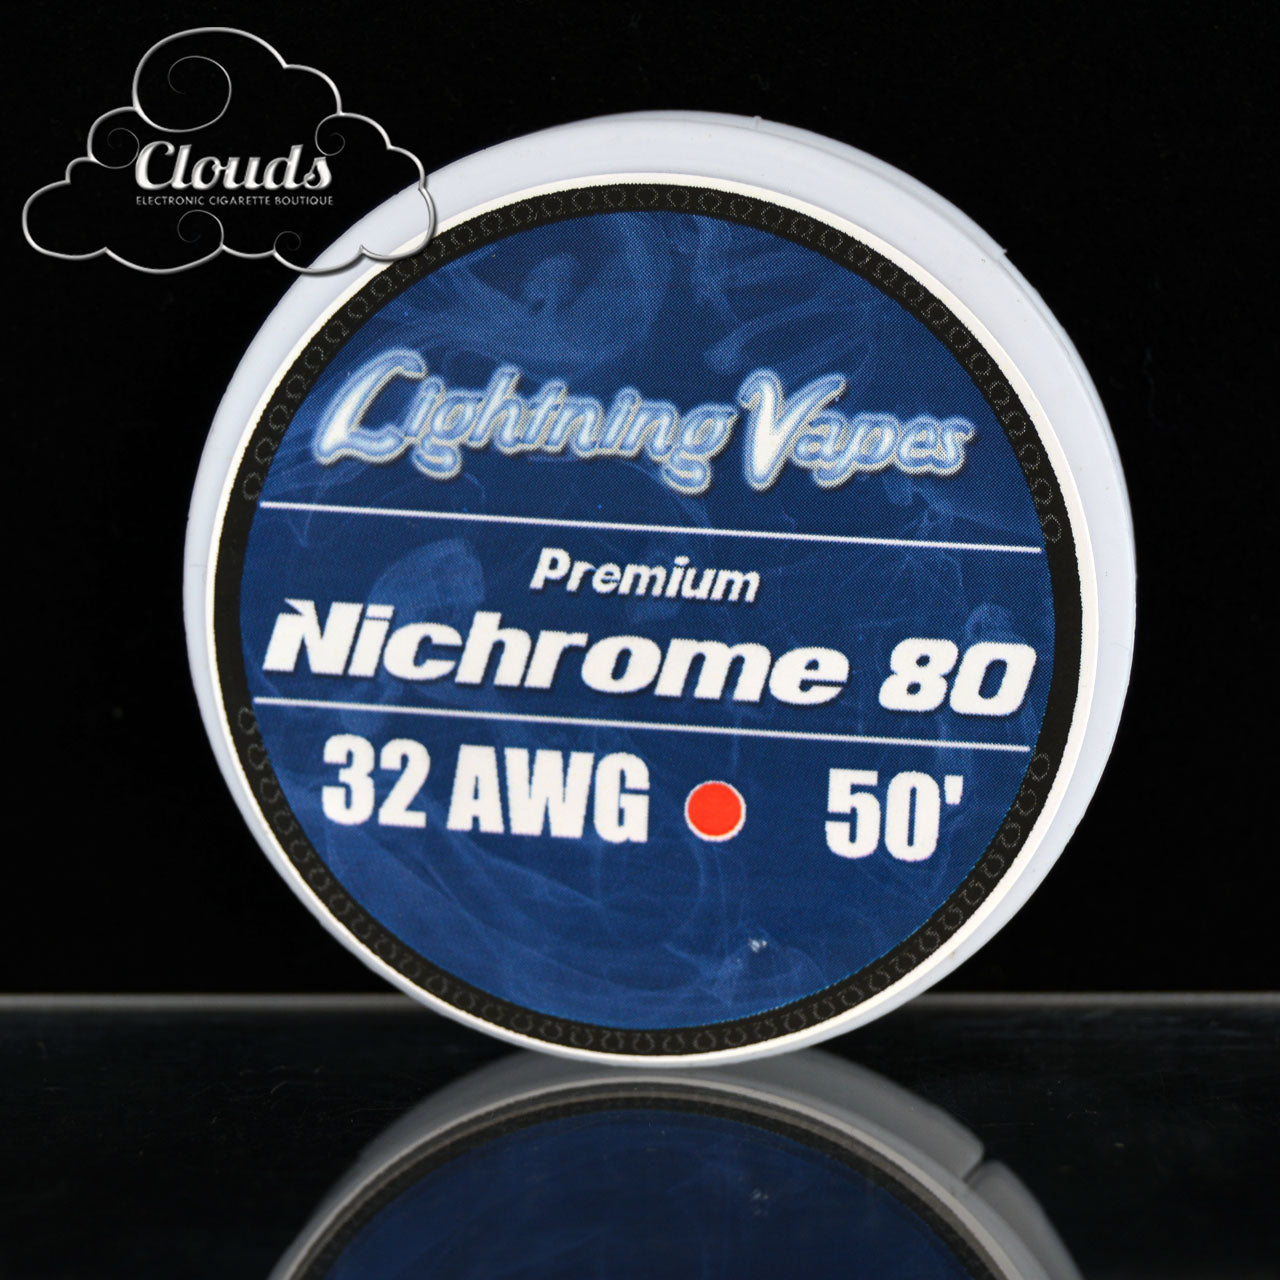 Lightning Vapes 32 AWG Nichrome 80 50ft